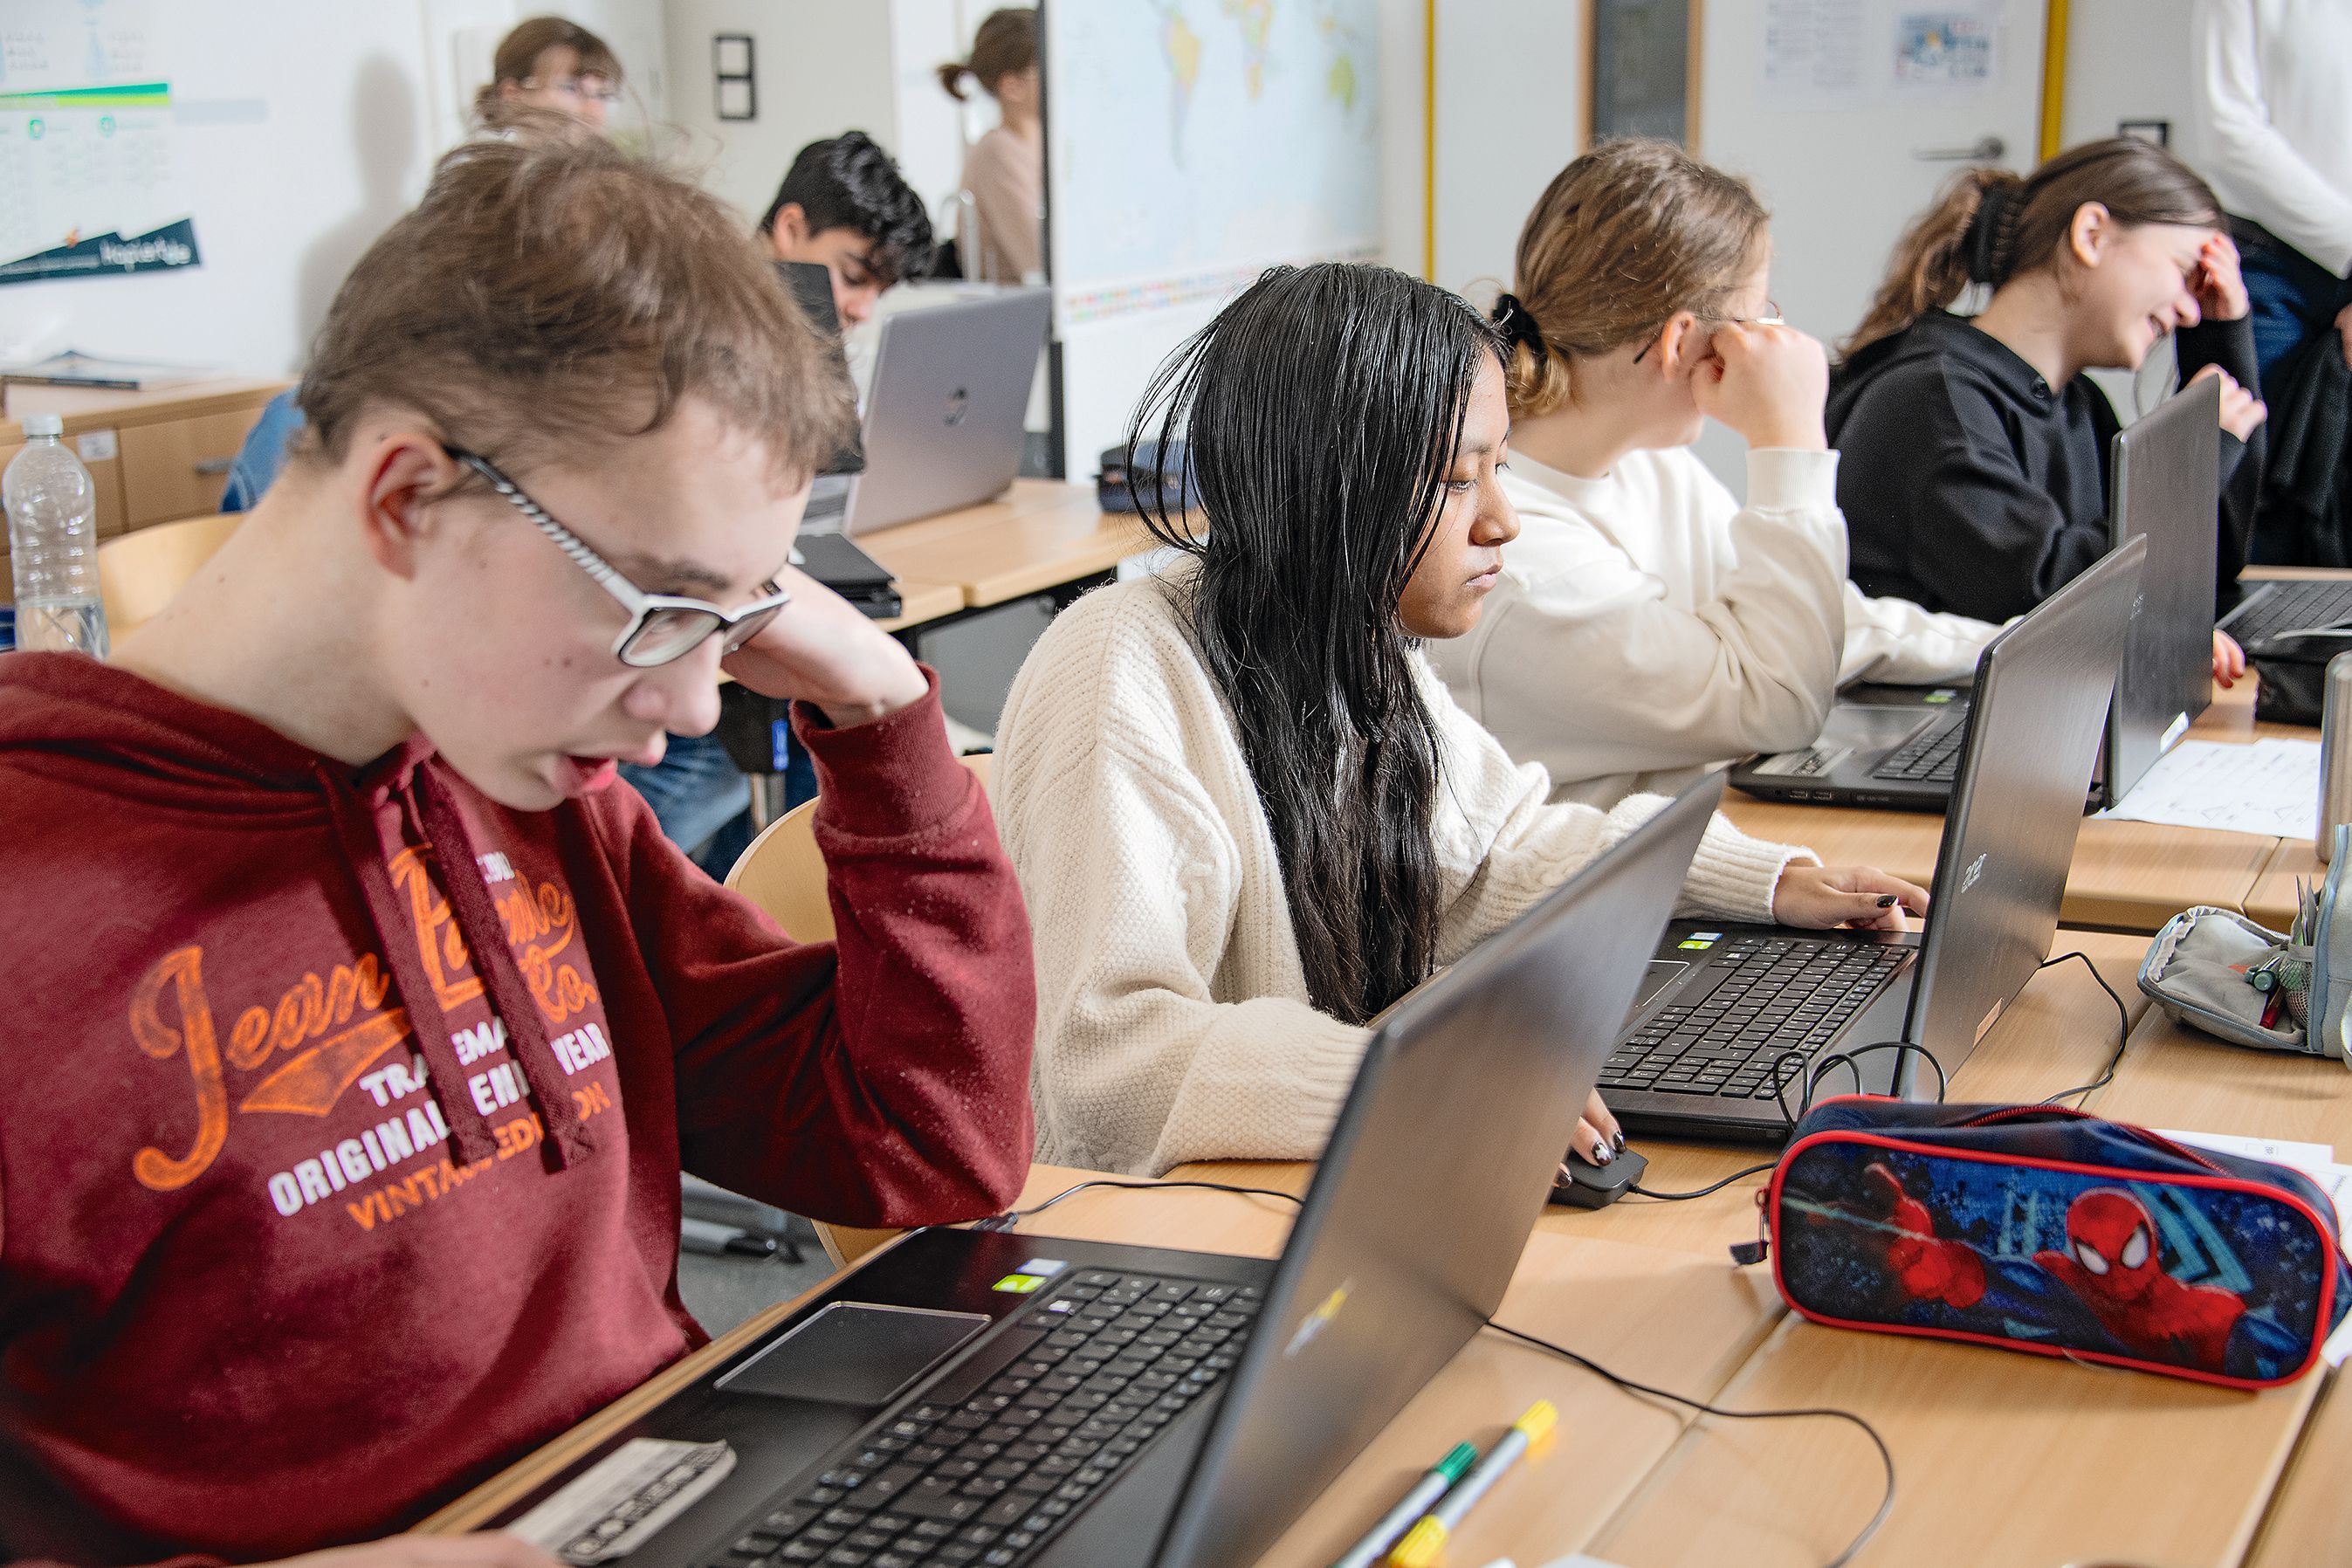 Ein Klassenzimmer in den mehrere Schülerinnen und Schüler sitzen. Alle arbeiten an Laptops. Im Vordergrund sitzt ein junge mit roten Pulli, Brille und hellen Haaren. Neben diesem ein Mädchen mit dunkeln langen Haaren. Sie trägt einen weißen Pulli. 